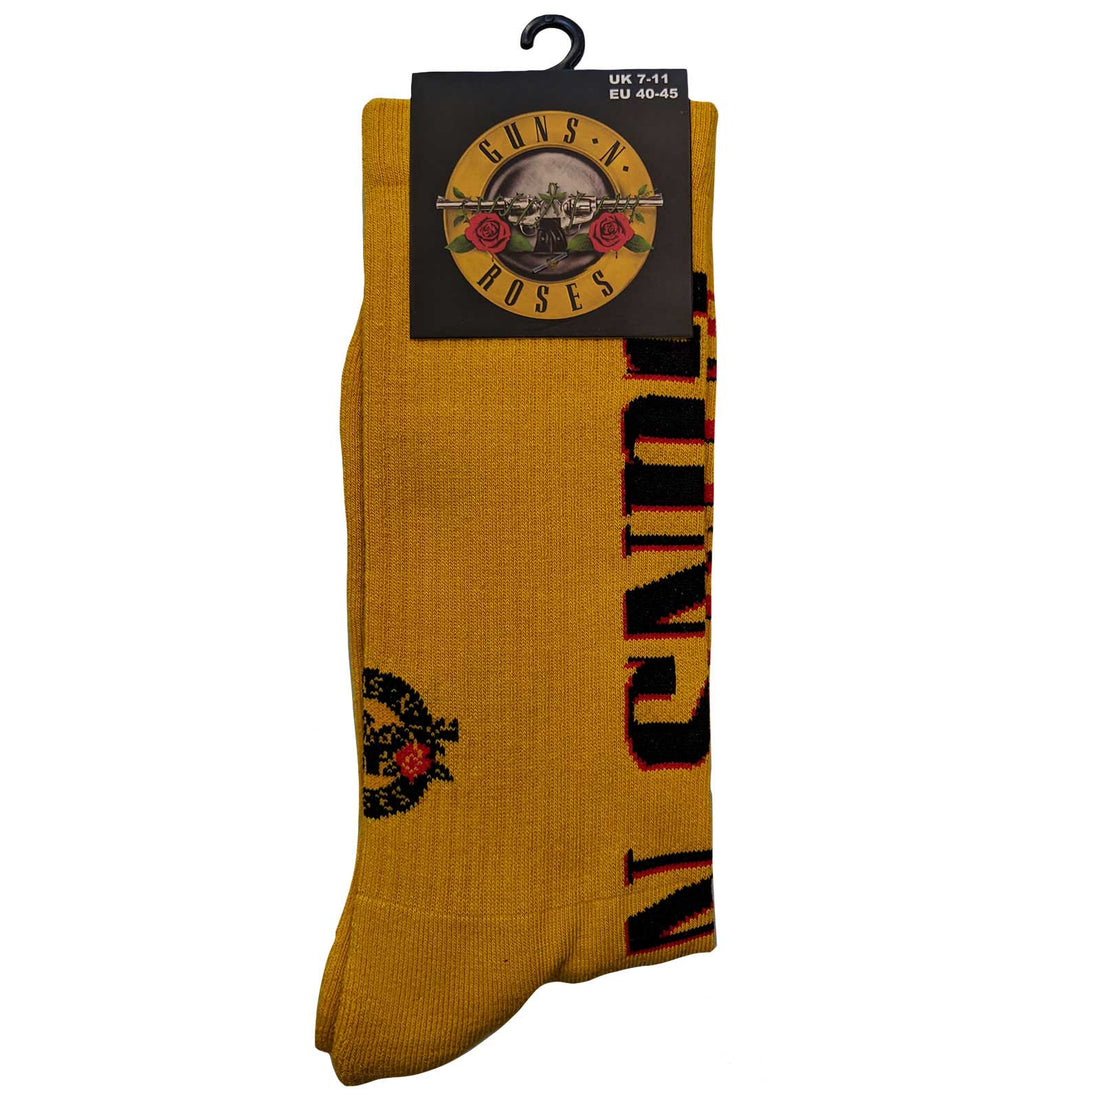 Guns N' Roses Ankle Socks: Appetite for Destruction (US Size 8 - 10)